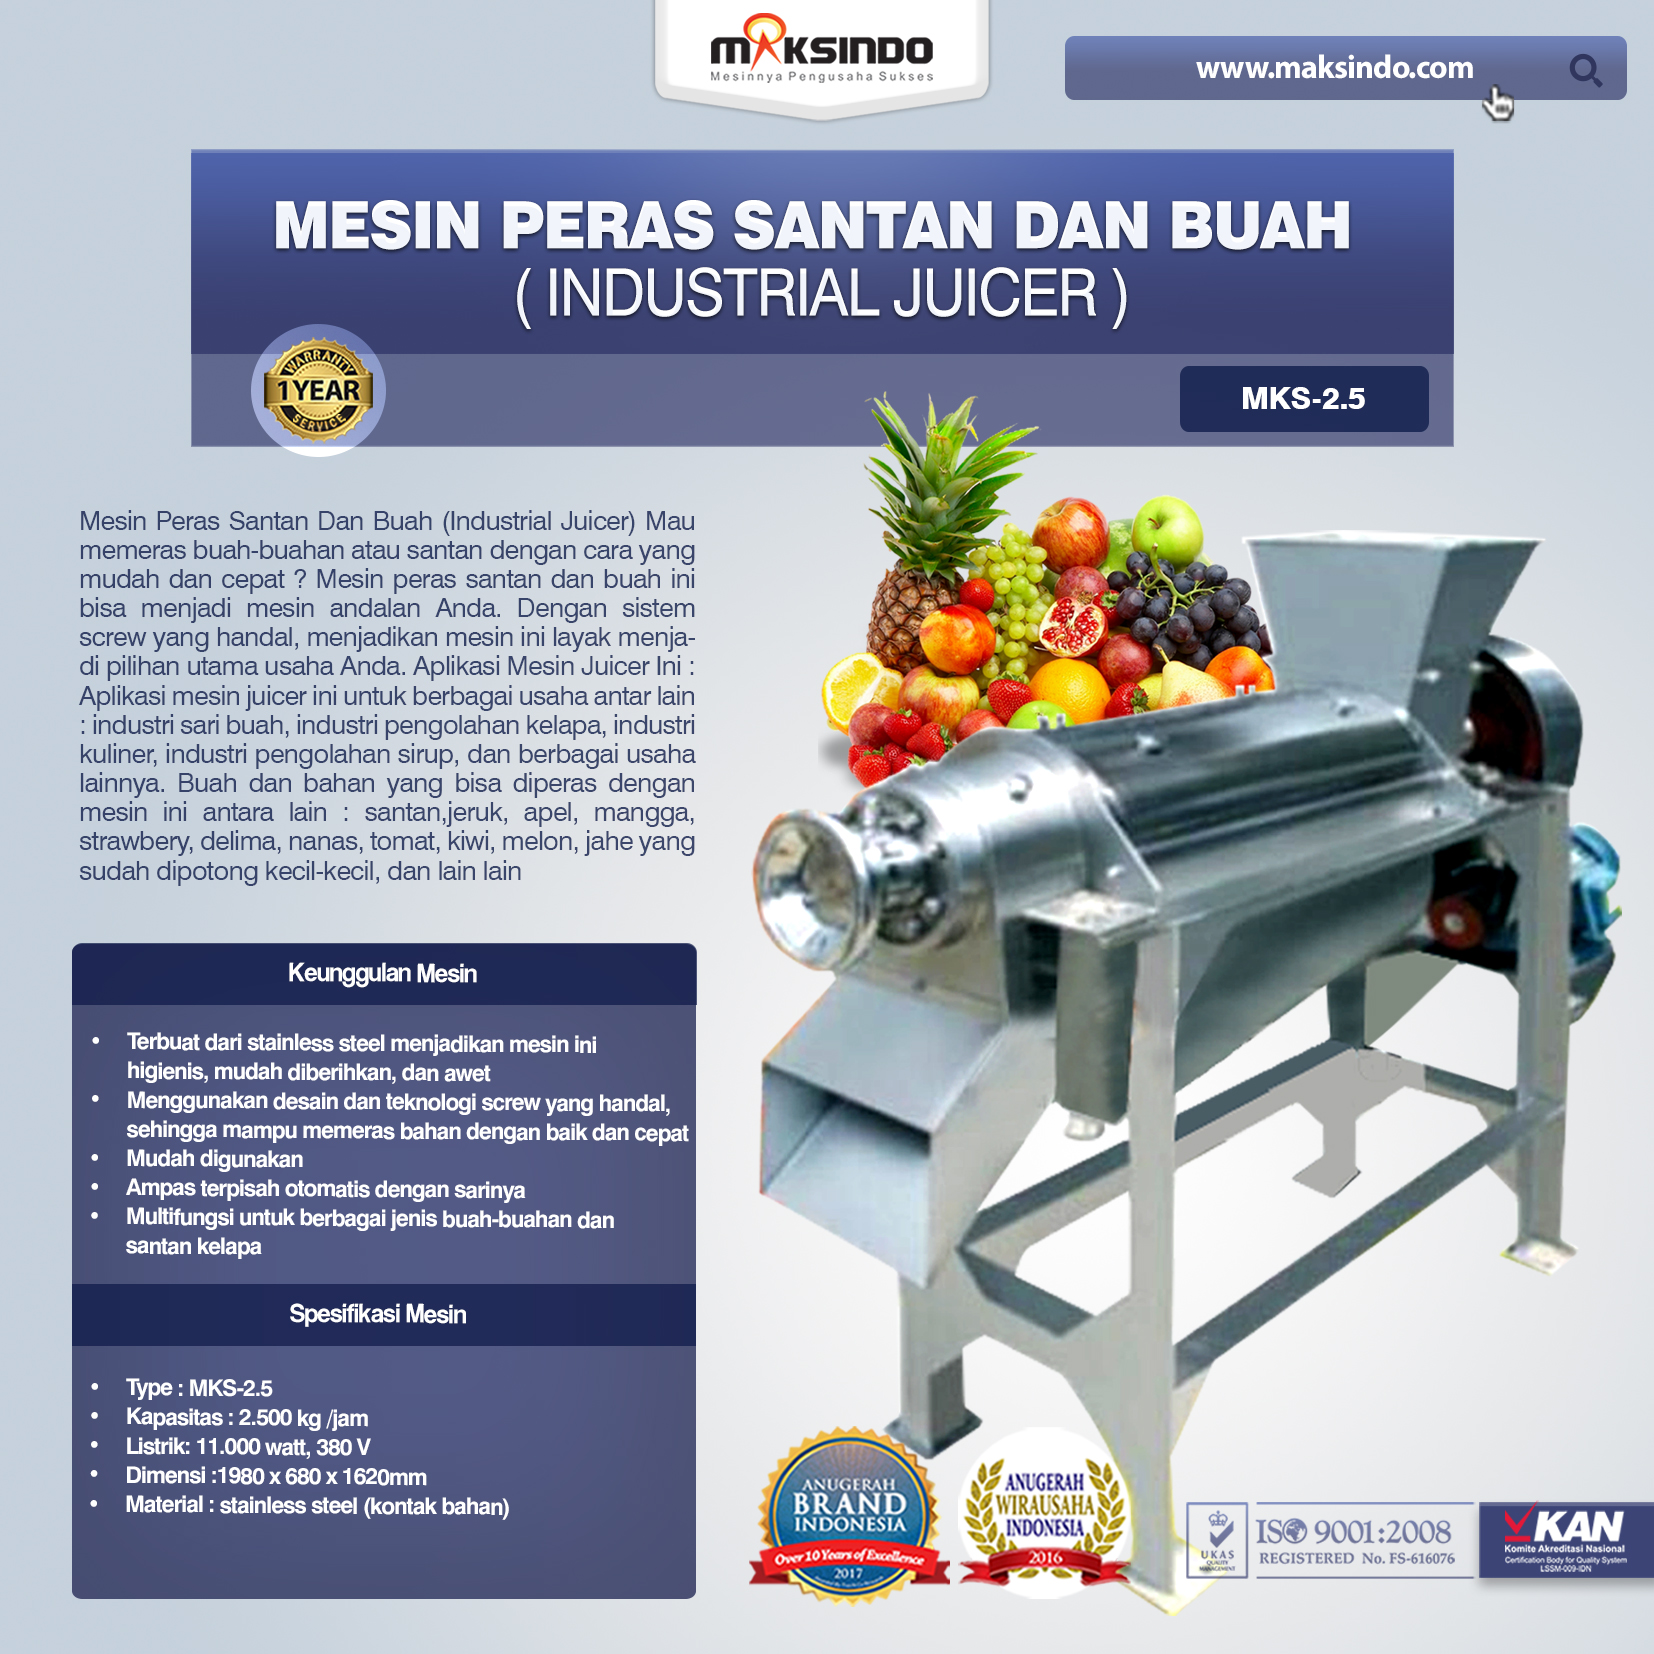 Mesin Peras Santan Dan Buah (Industrial Juicer) Type MKS-2.5